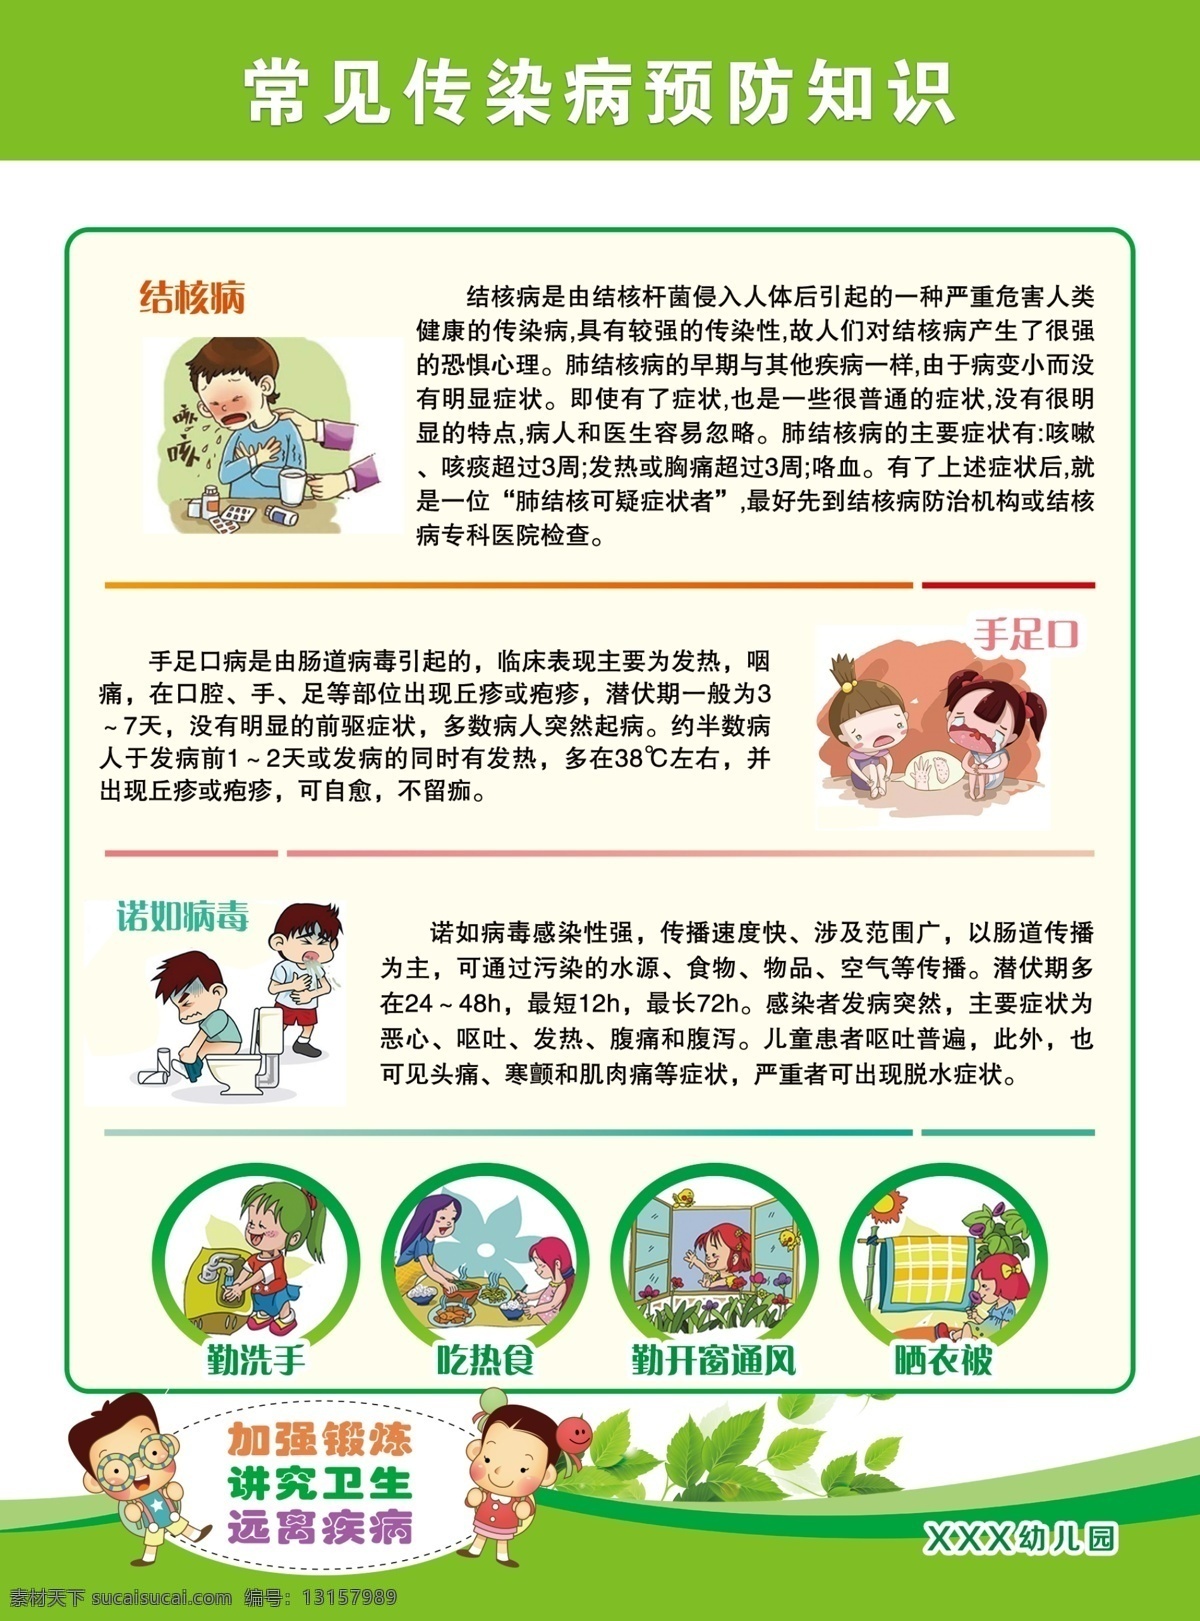 幼儿园 预防知识 常见传染病 如何预防病毒 儿童海报